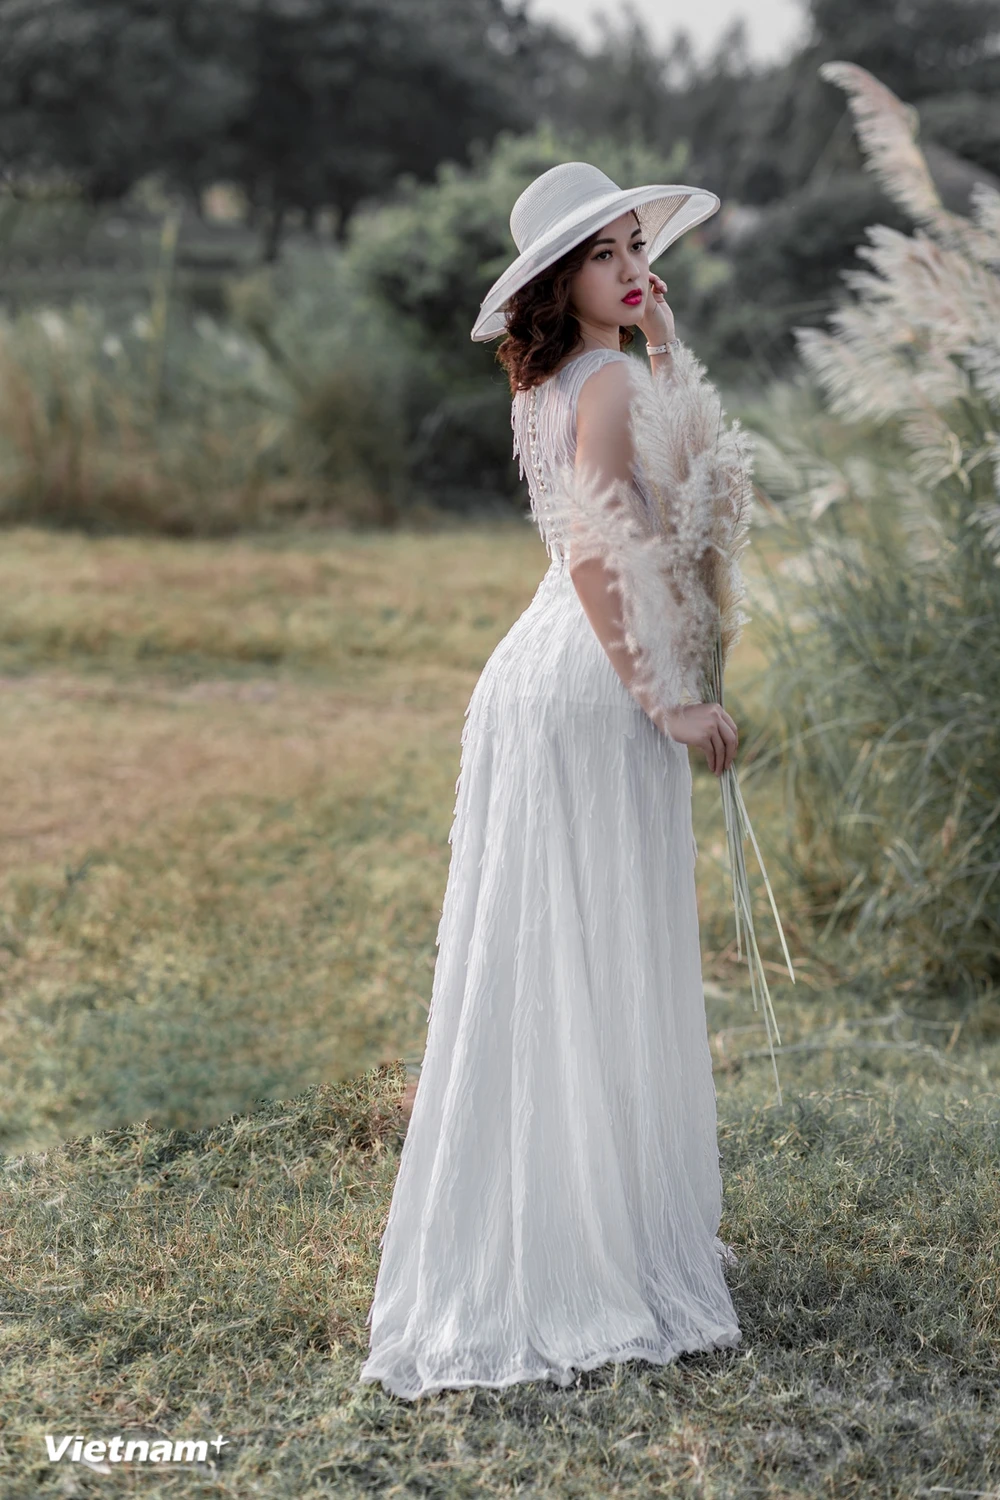 MC Phương Thảo đăng ảnh xinh đẹp, dễ thương trong bộ váy trắng